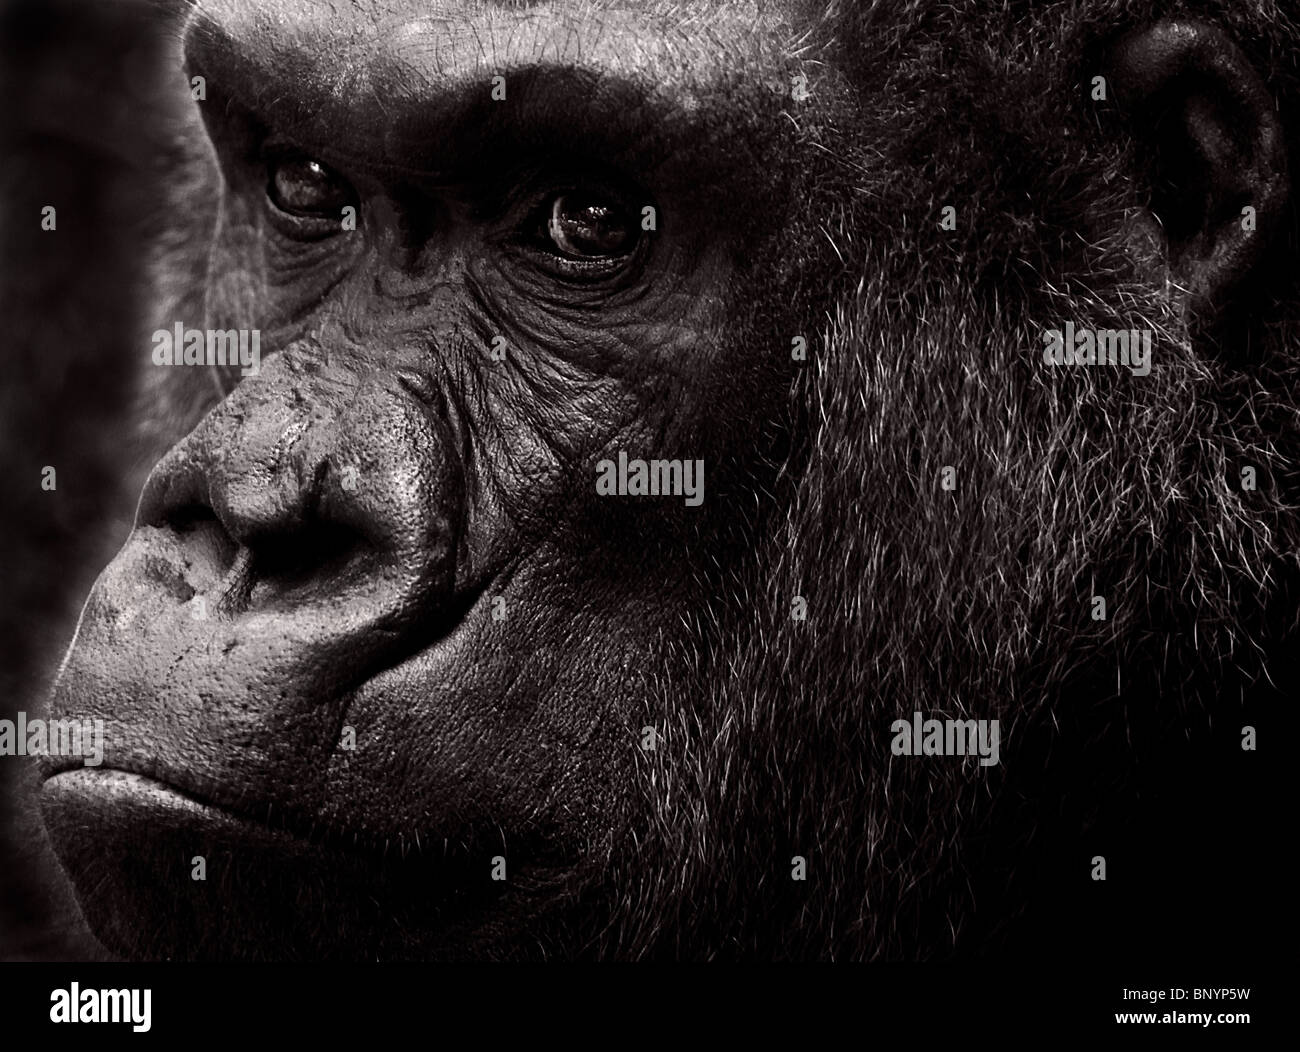 Western Lowland Gorilla (Captive) Black and White Stock Photo